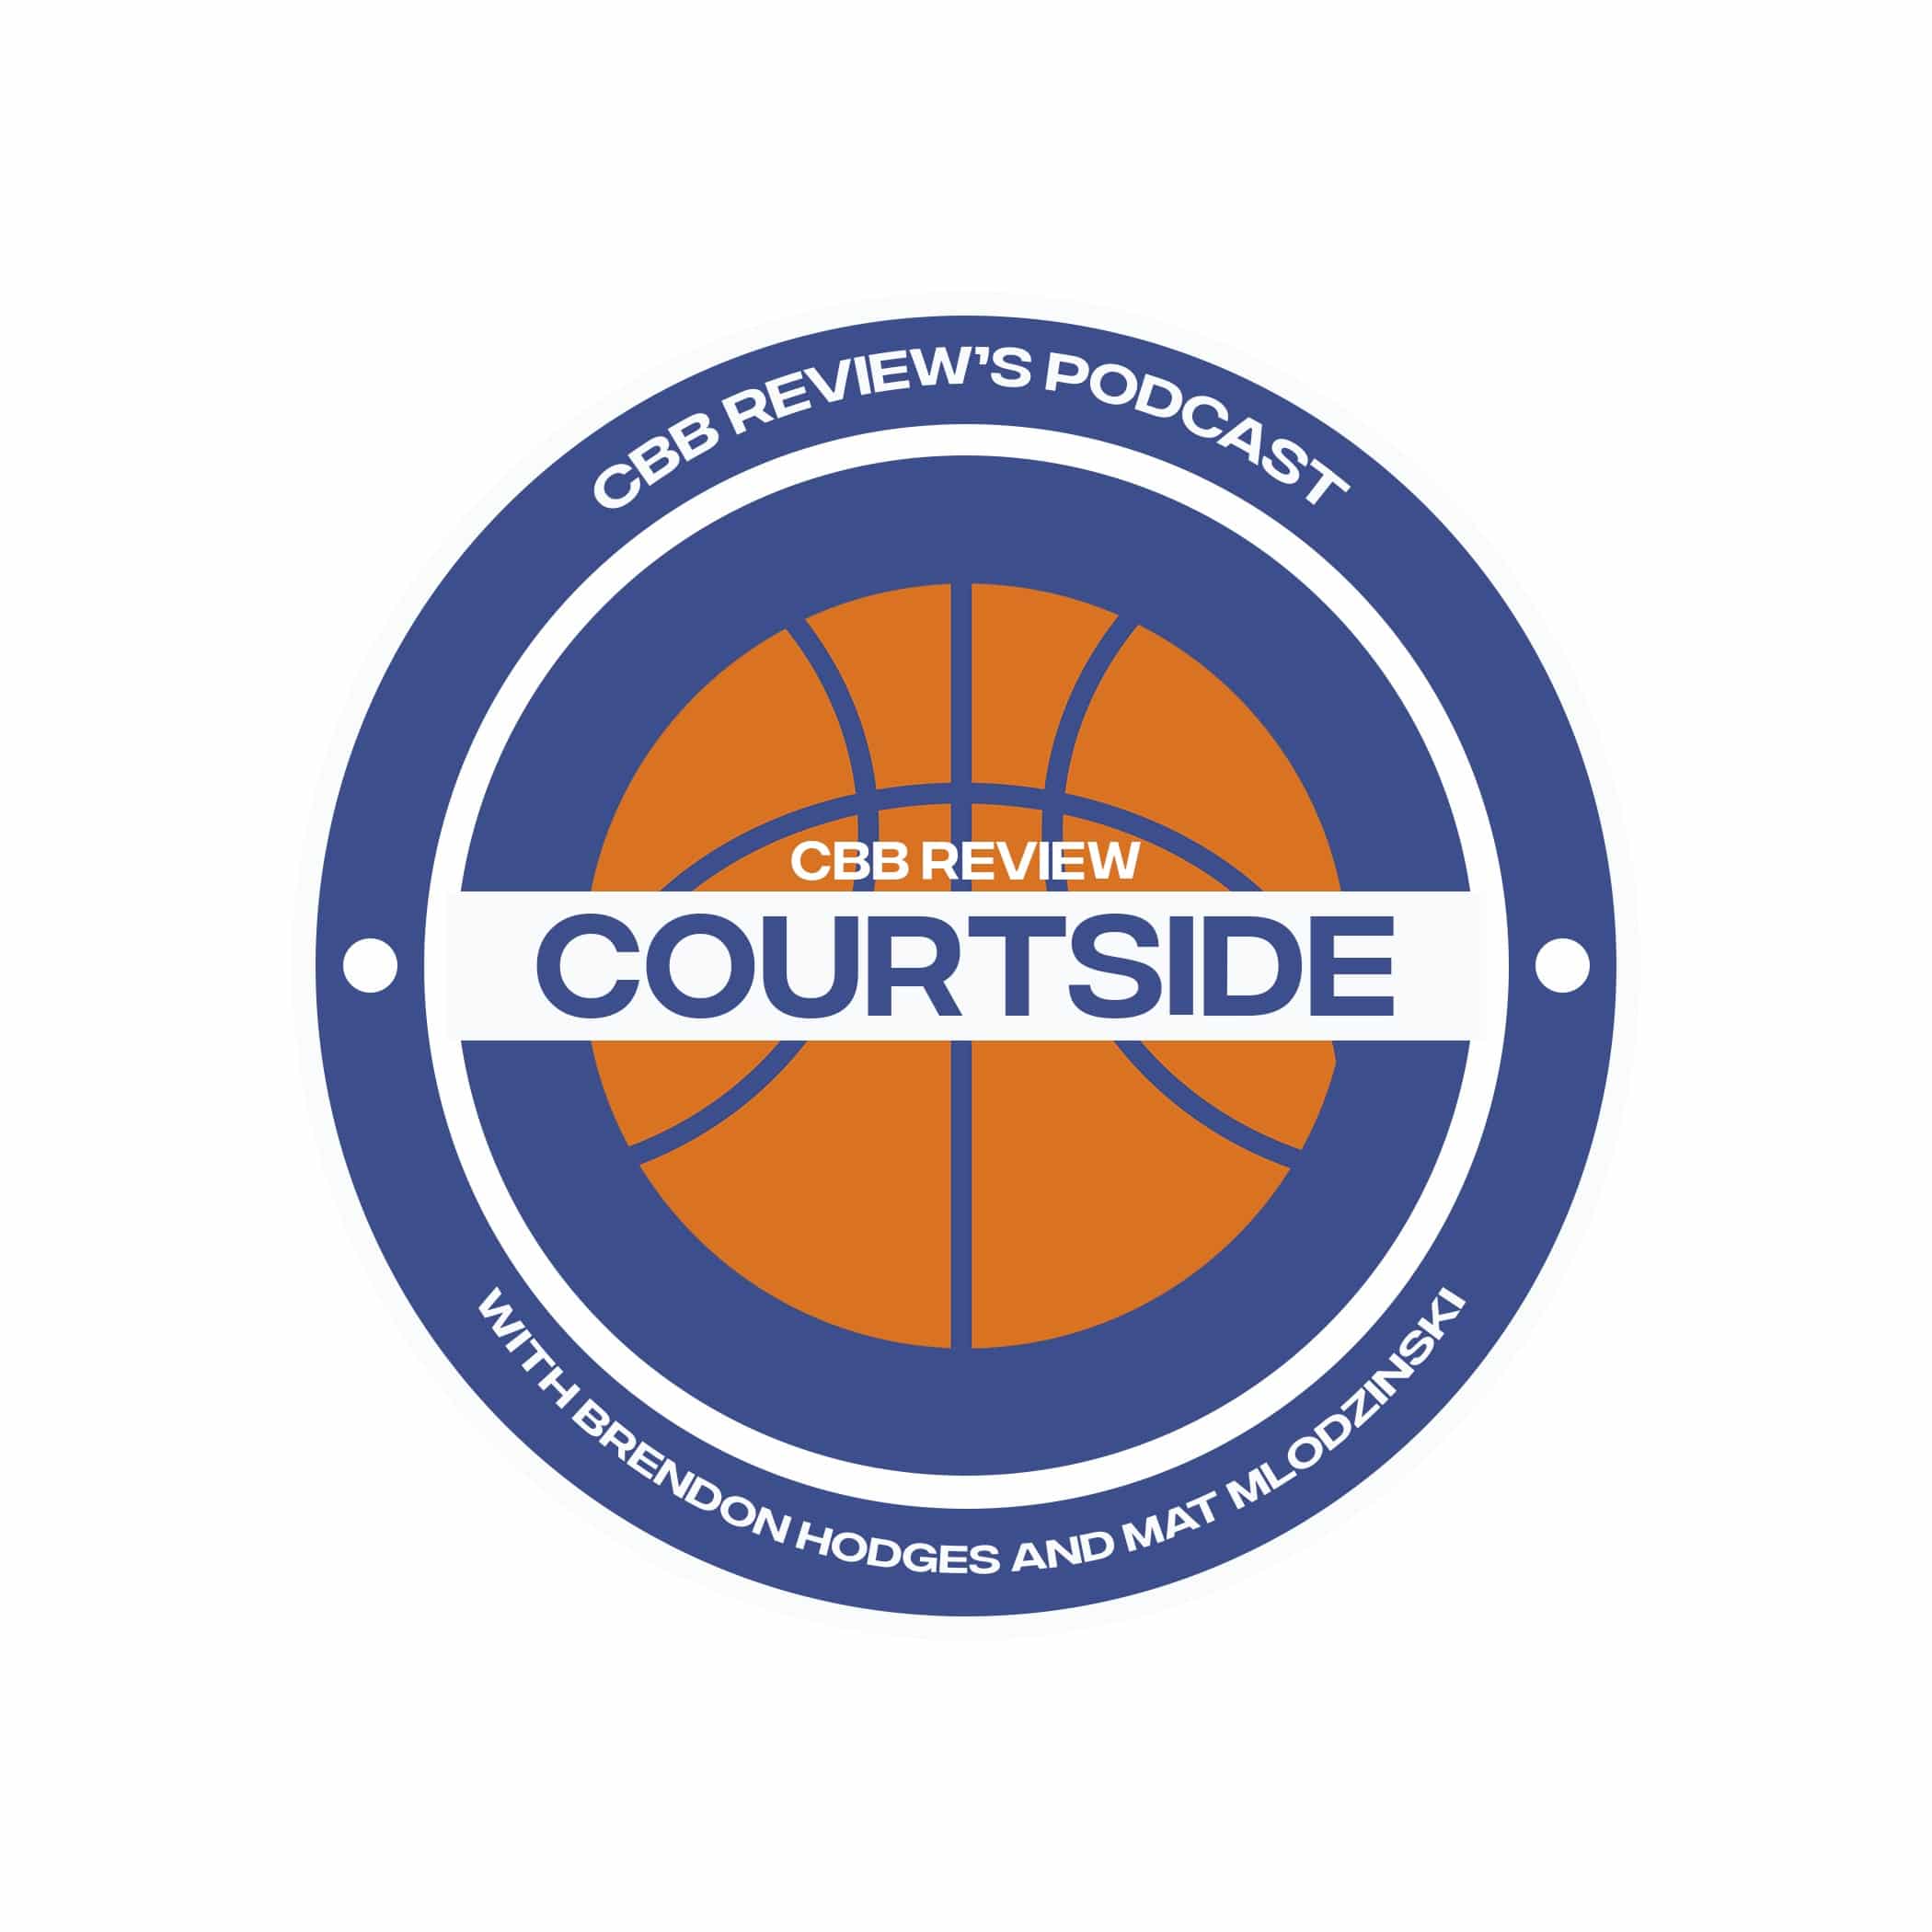 CBB Review Courtside logo